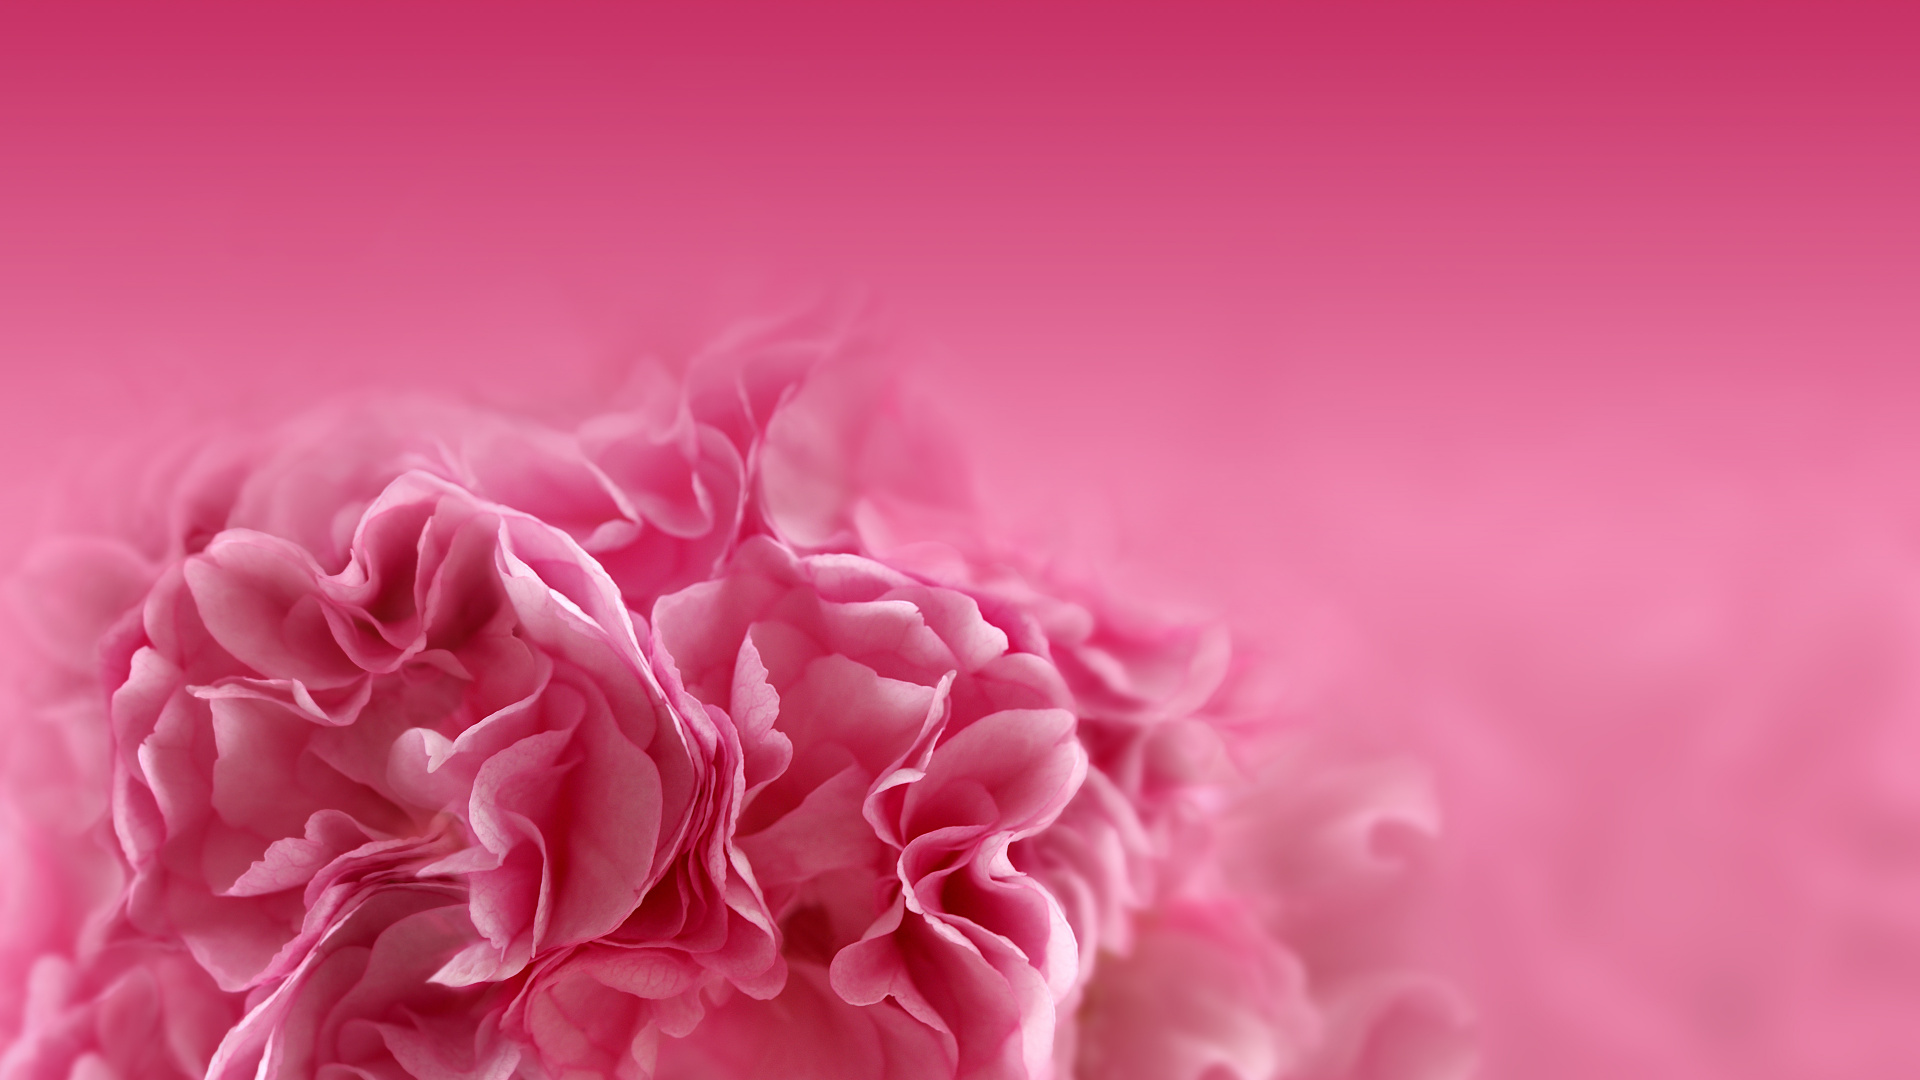 粉红色的花朵, 粉红色, 红色的, 牡丹, 康乃馨 壁纸 1920x1080 允许